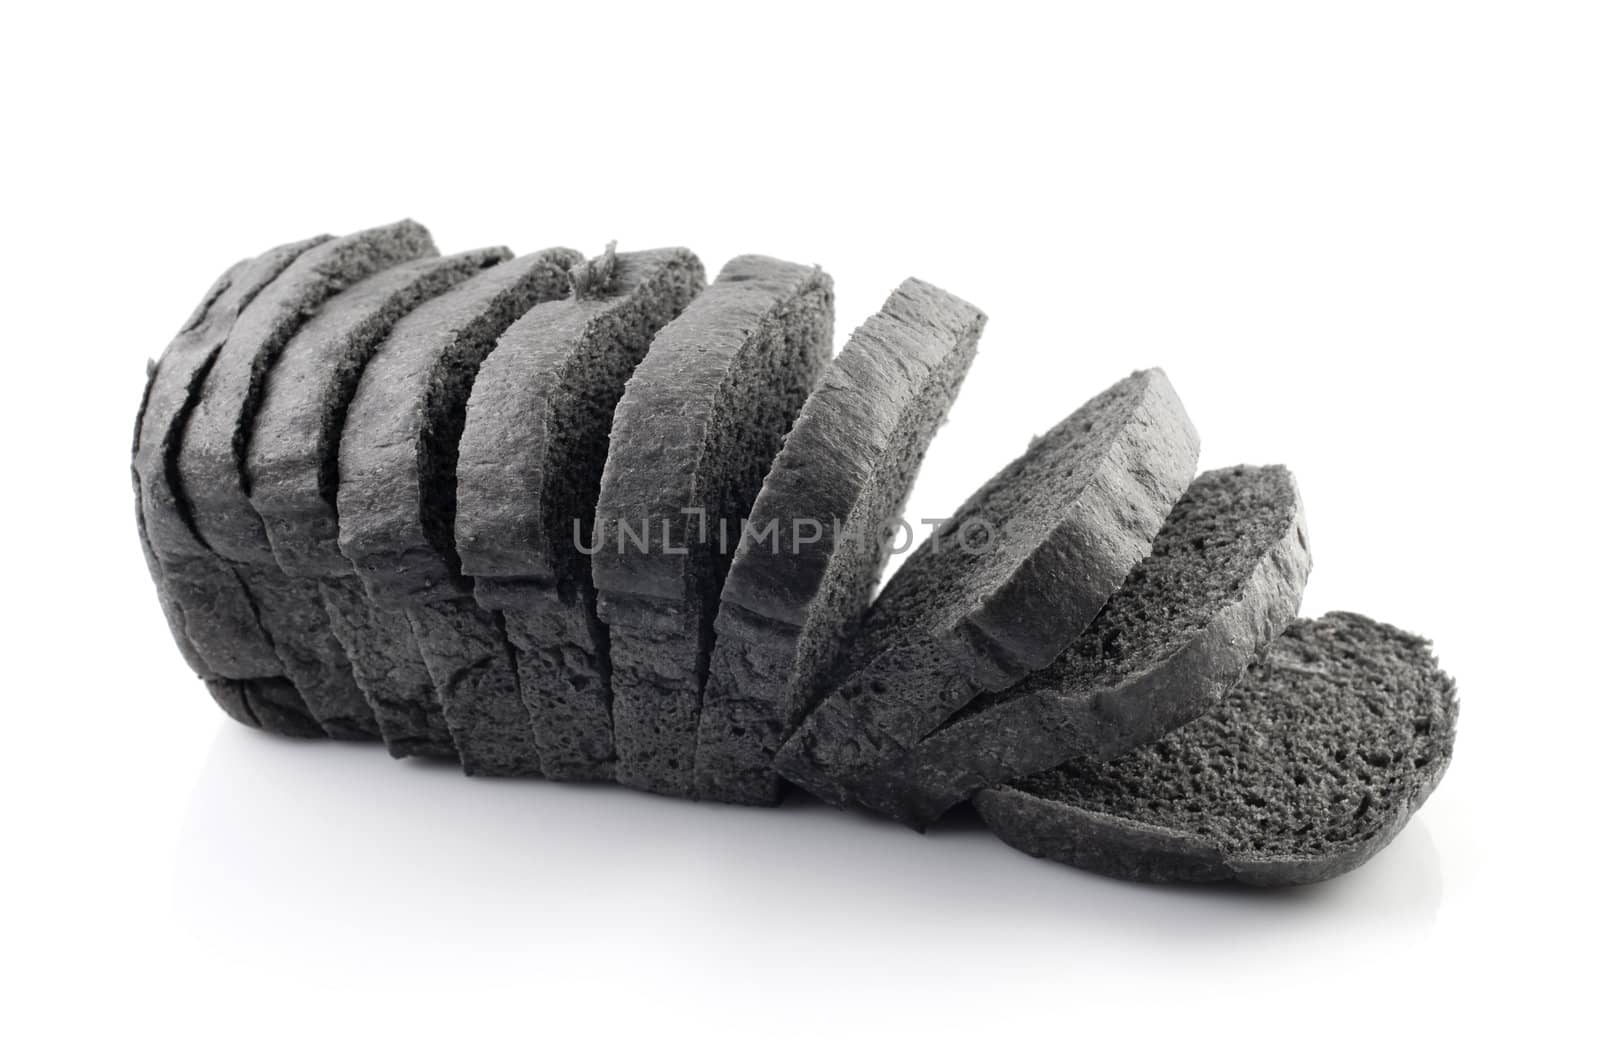 Black charcoal bread by szefei